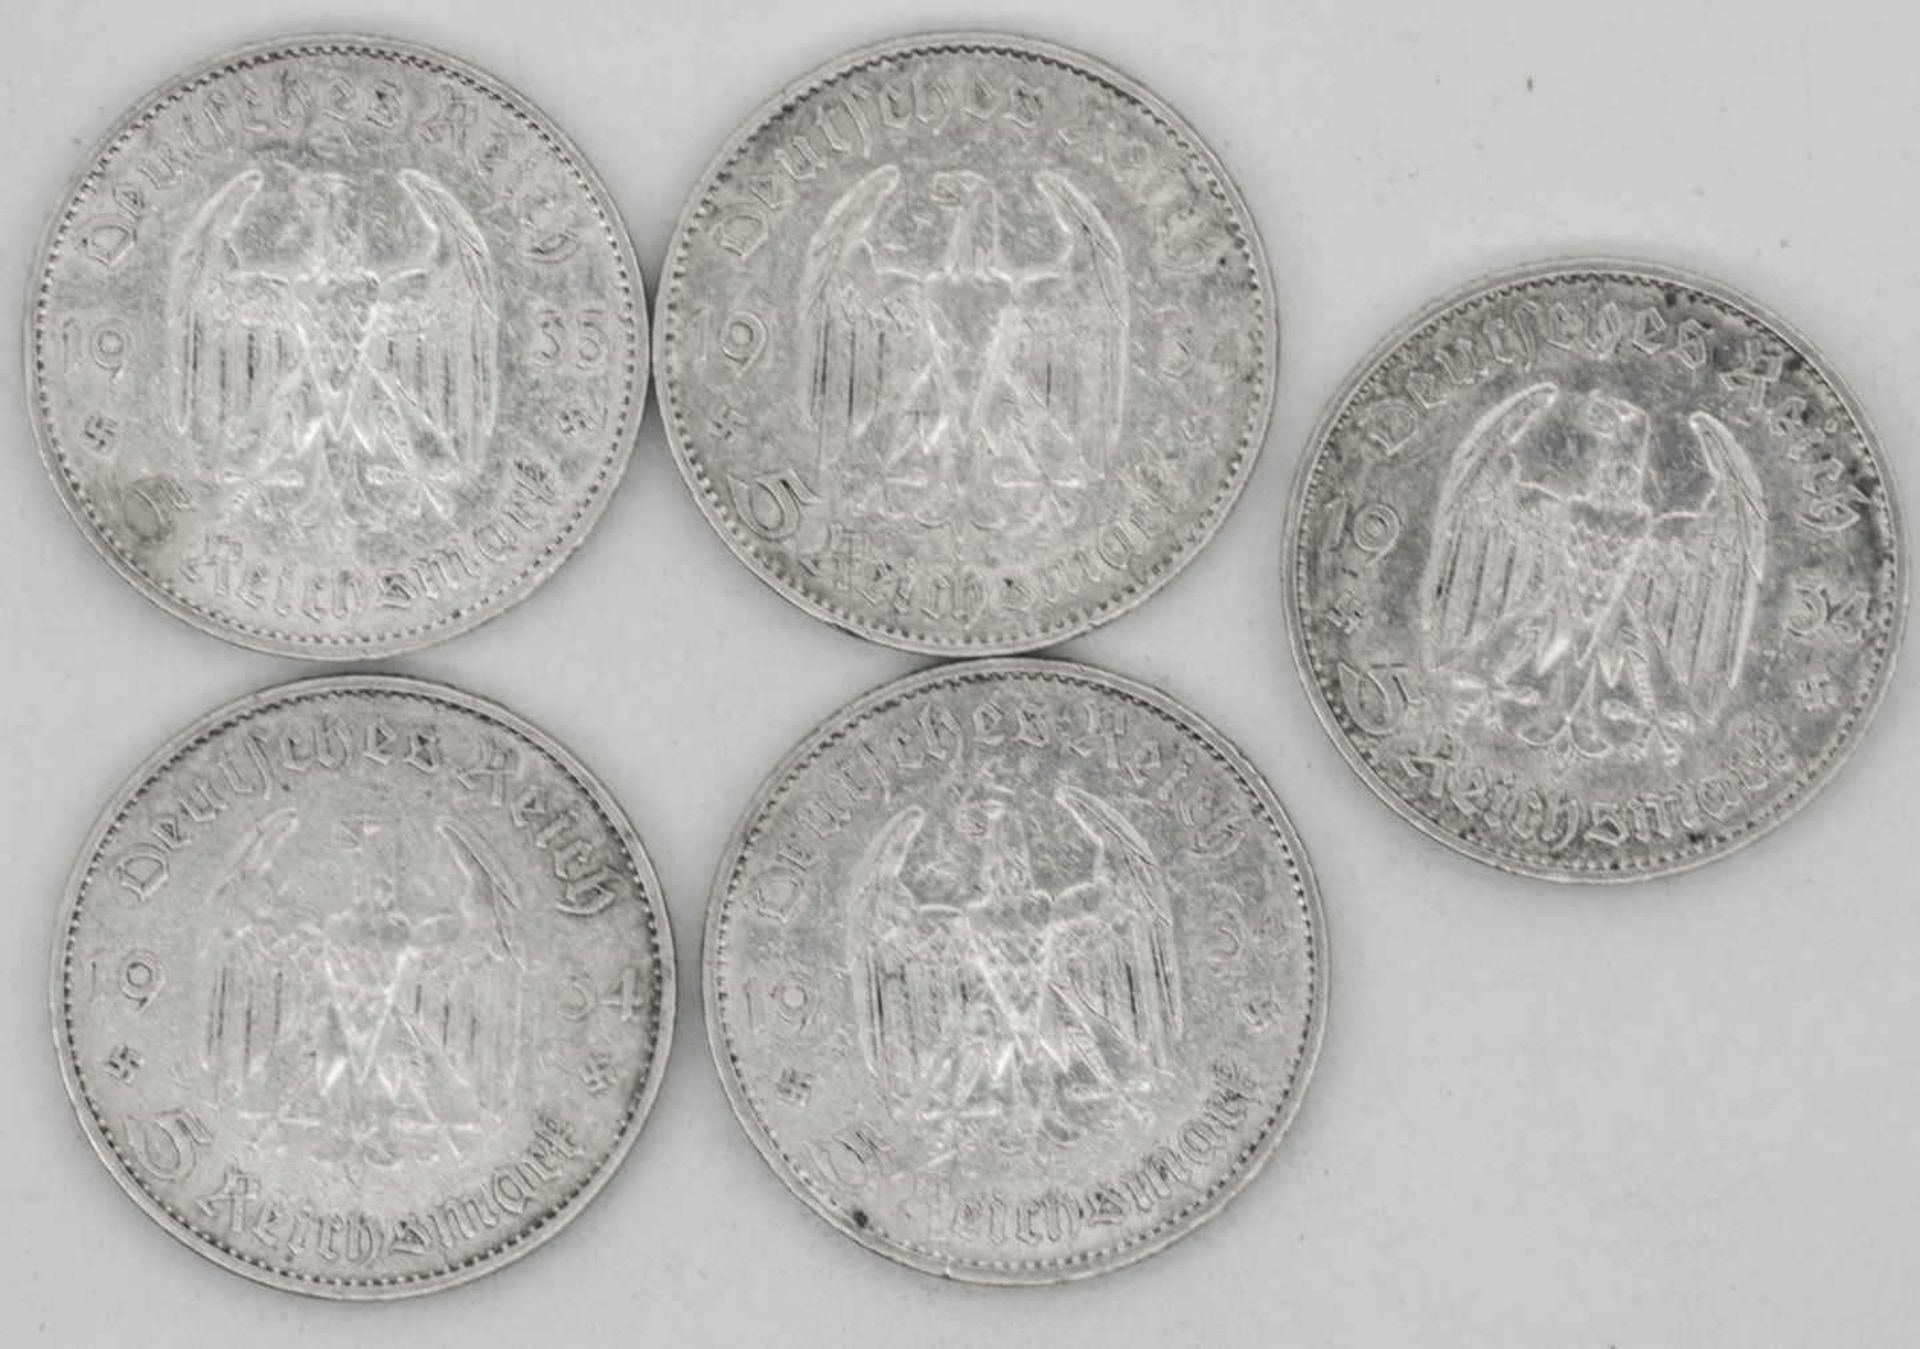 Deutschland 1934/35 A, F, Lot 5.- Reichsmark - Silbermünzen "Garnisonskirche". Qualität: ss. - Bild 2 aus 2